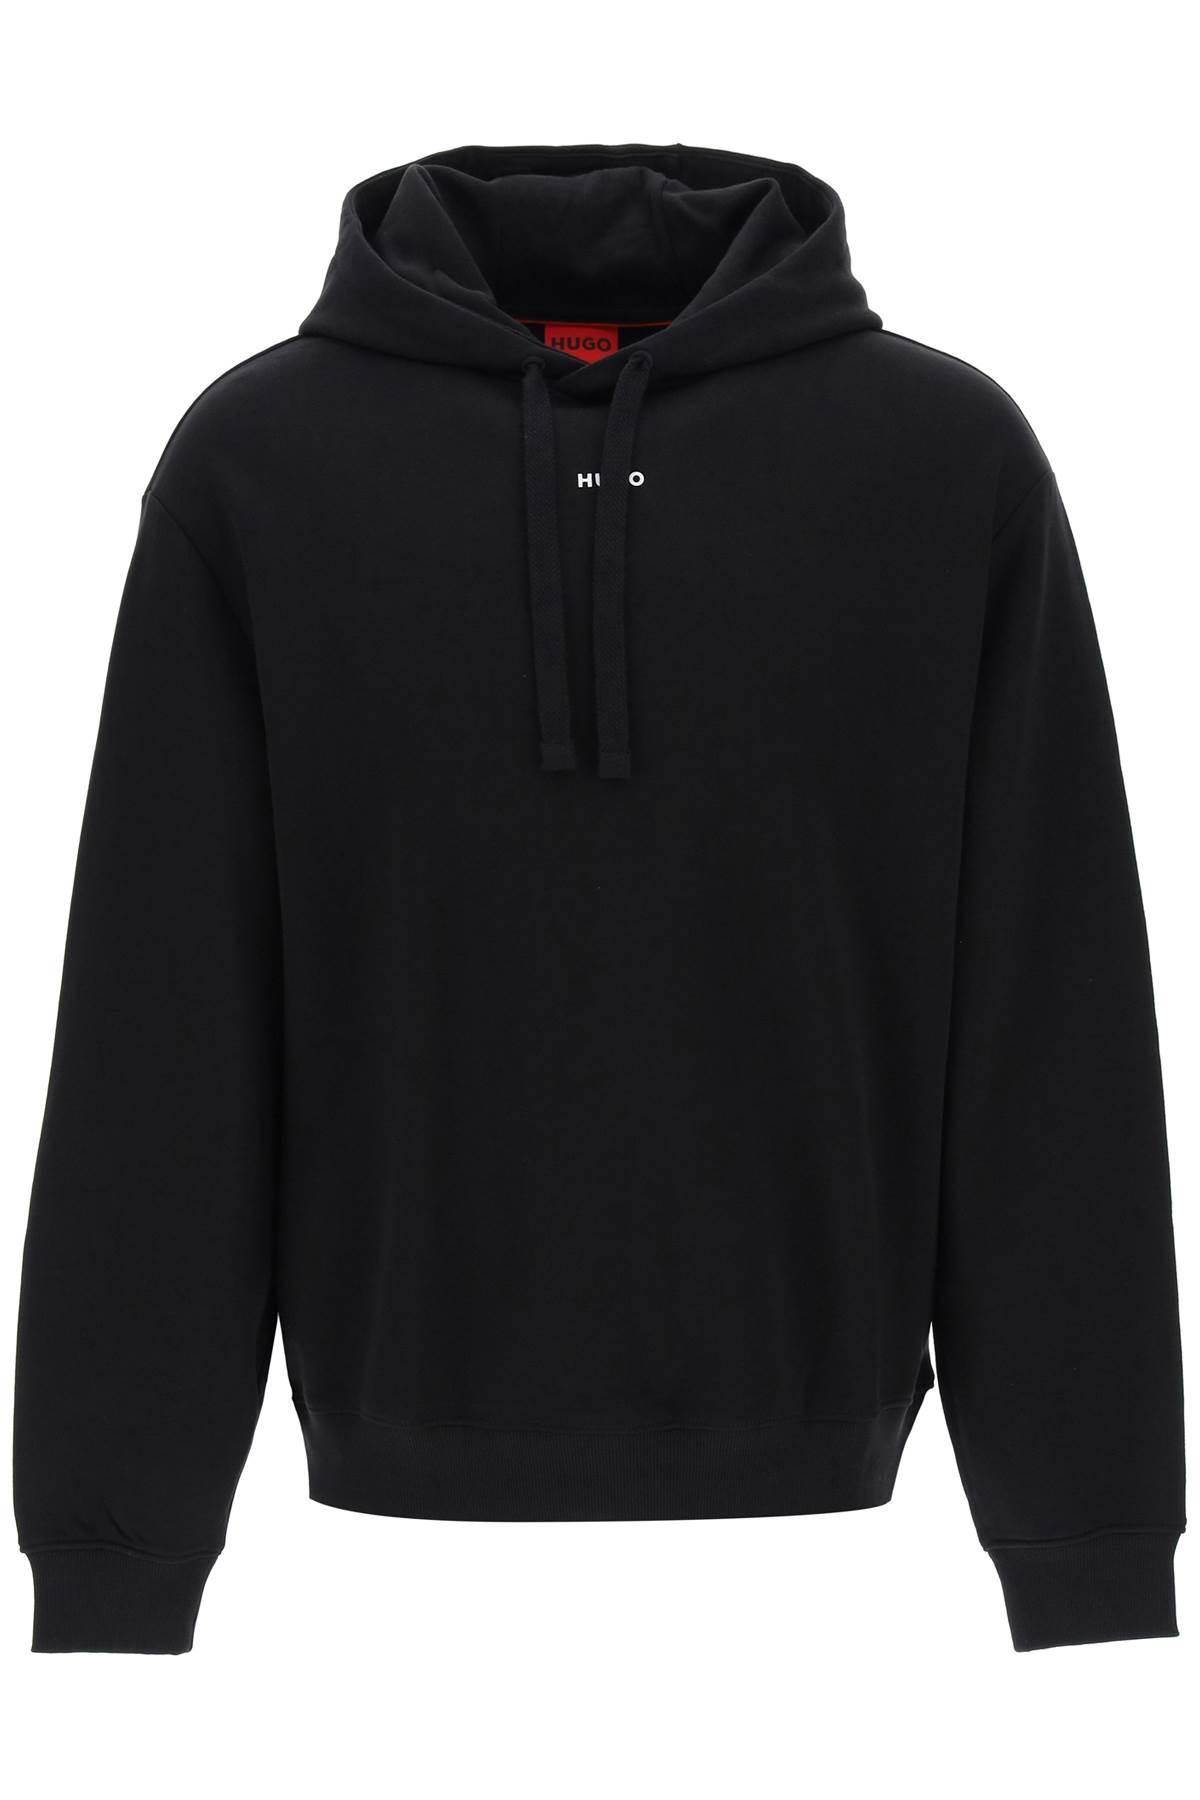 HUGO Sweatshirt With Hood in Black for Men | Lyst